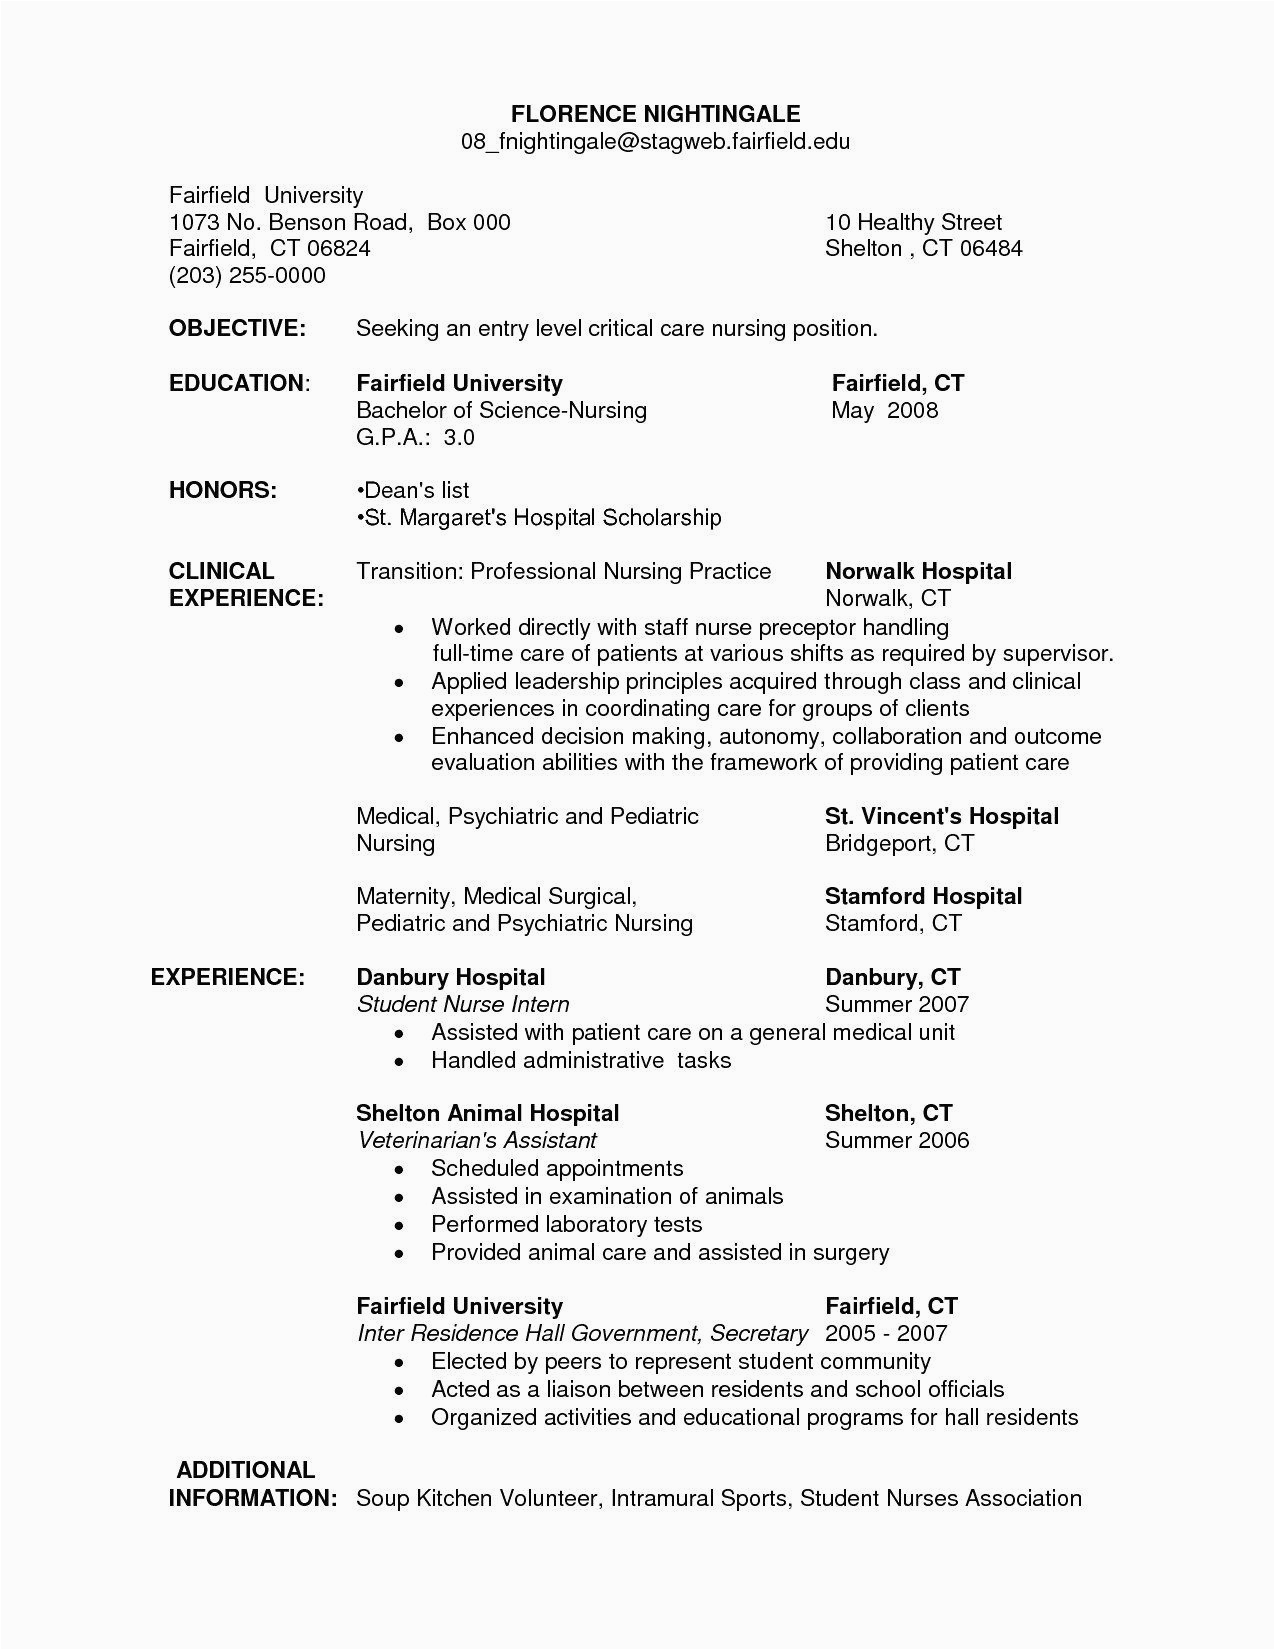 Sample Resume for Entry Level Graduate Lisenced Phlebotomist Student Nurse Intern Resume Sample Coverletterpedia